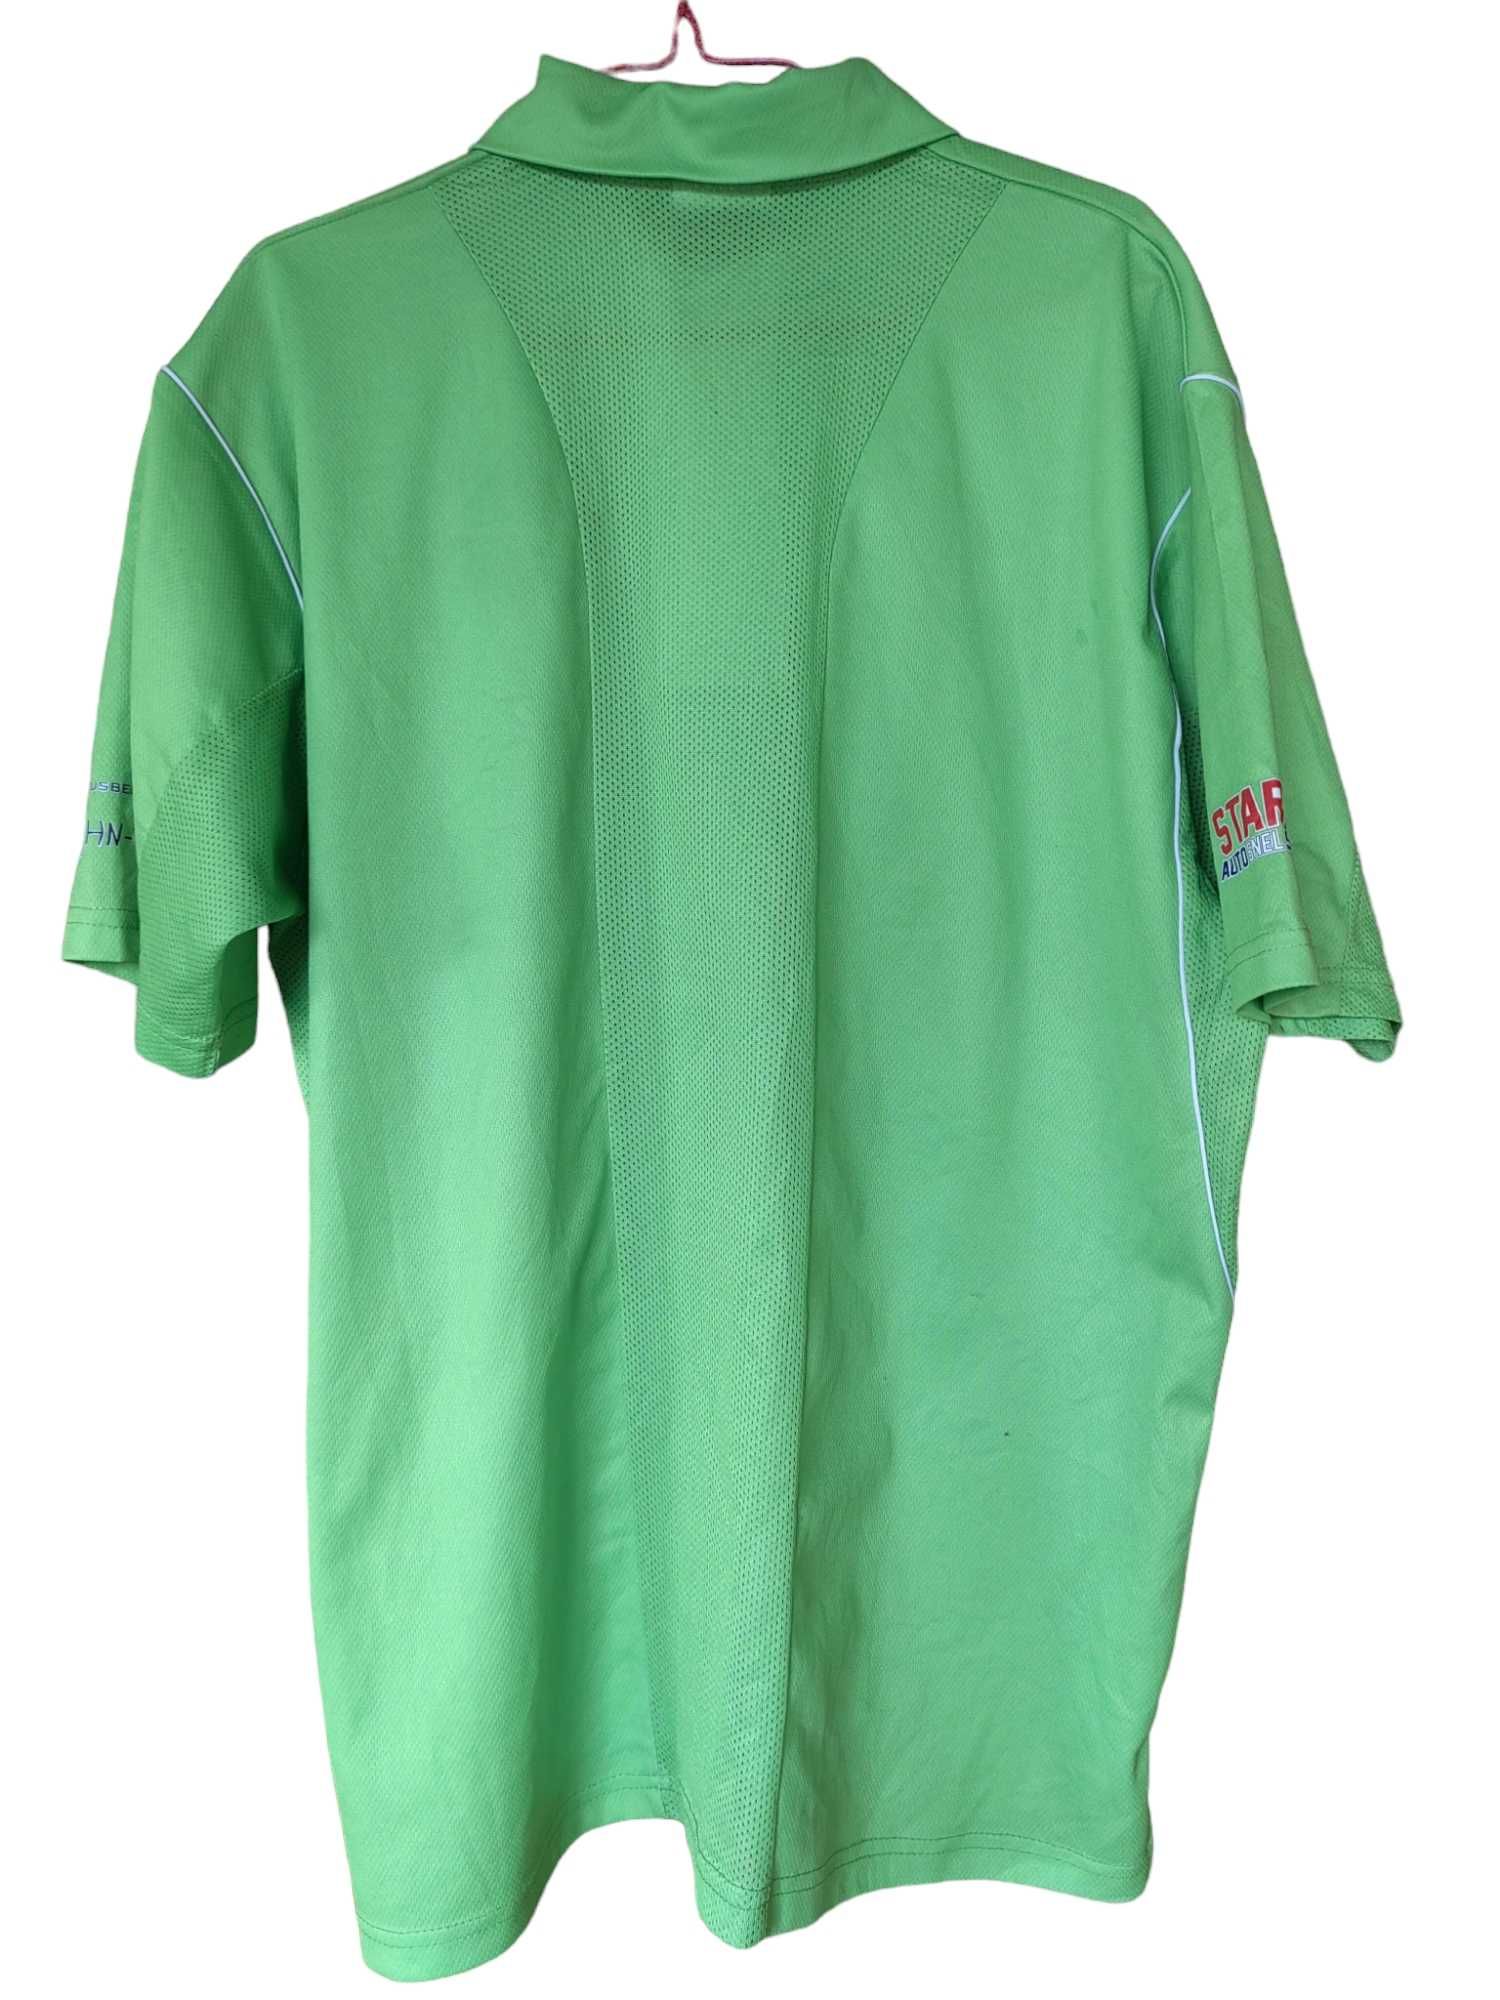 Мъжка тениска с надписи Klupp, 100% полиестер, Зелена, 74x61, XL